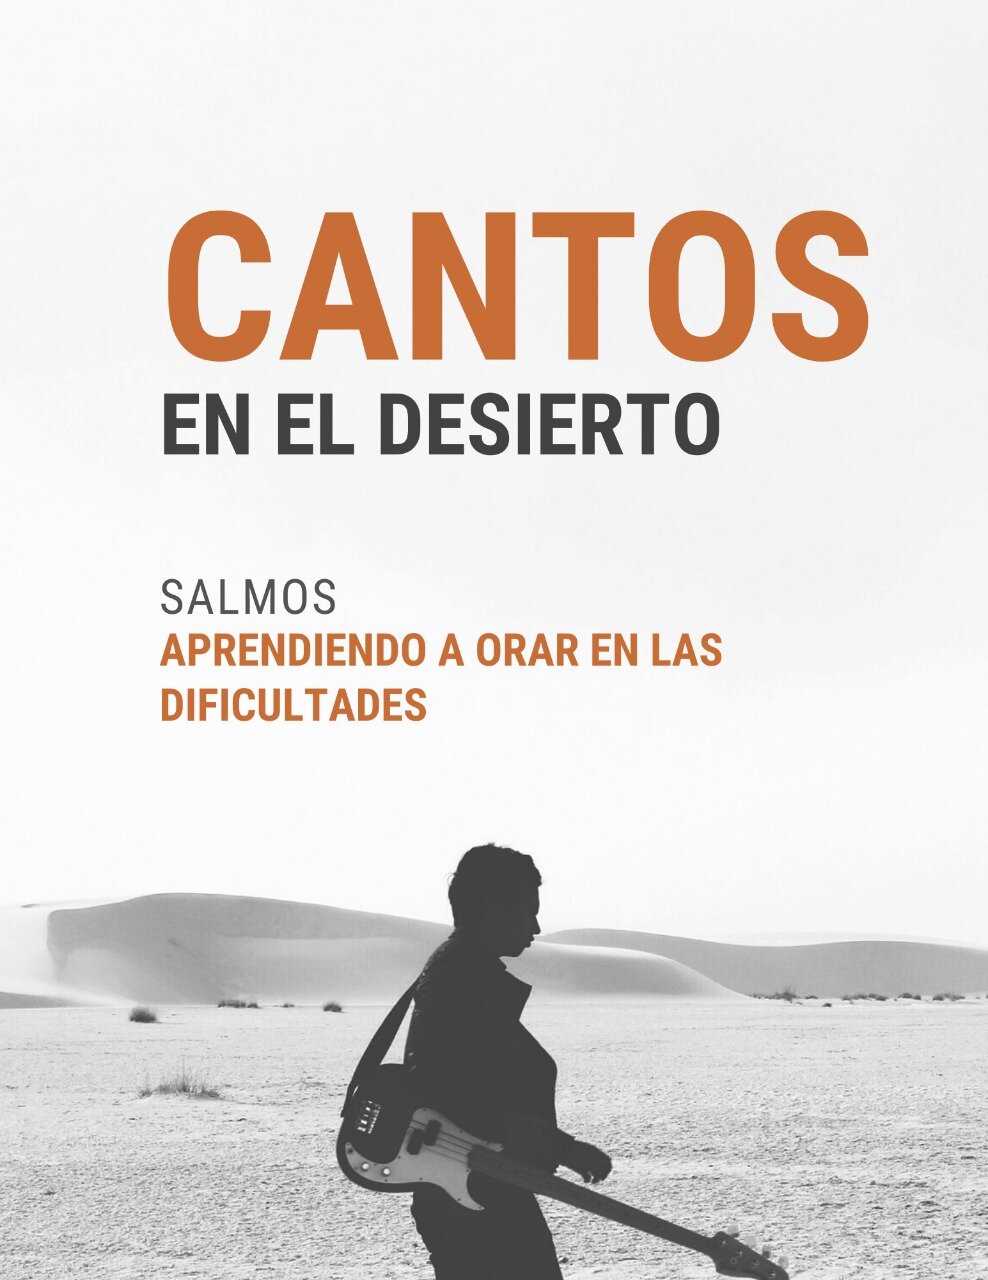 Cantos en El Desierto: Una Serie de Sermones para Su Iglesia Durante  Cuaresma — Let's walk together!